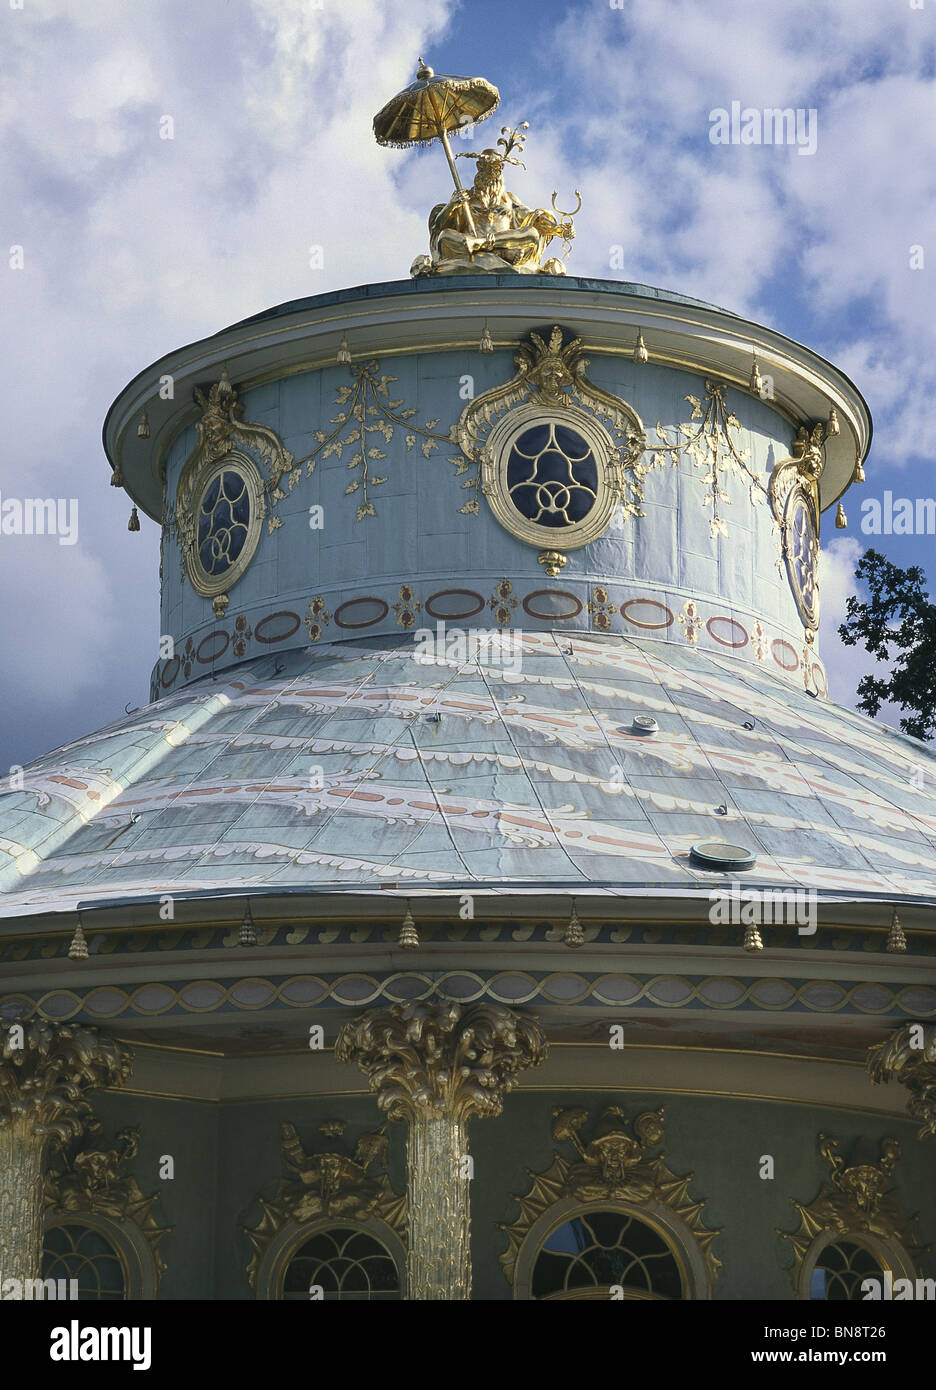 Sans Souci-Palast, Potsdam, Deutschland. Von Frederick II. (der große) von Preußen für sich selbst. Chinesisches Teehaus, Dach-detail Stockfoto